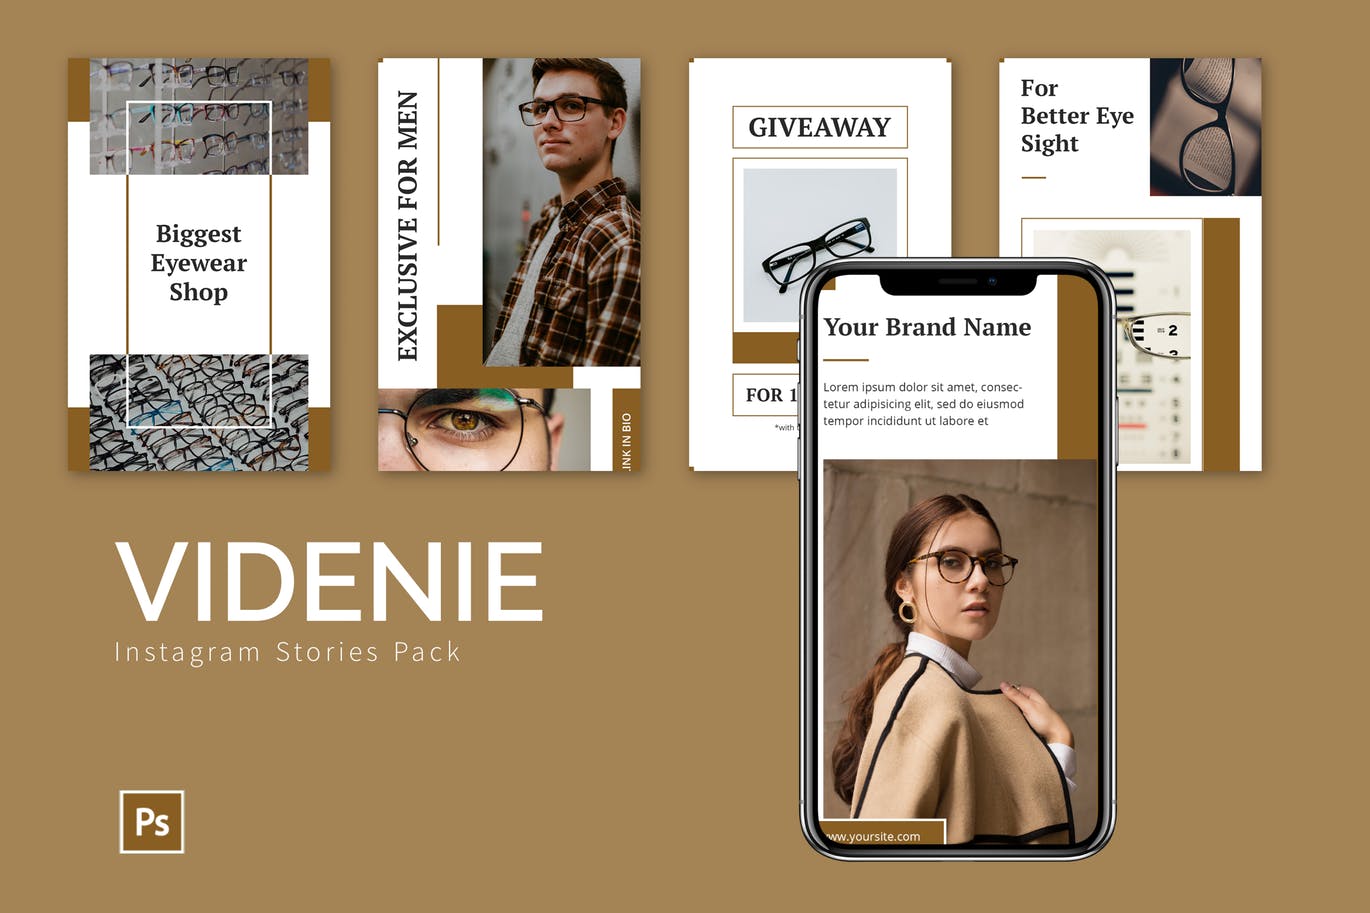 时尚饰品品牌推广Instagram设计模板第一素材精选 Videnie – Instagram Story Pack插图